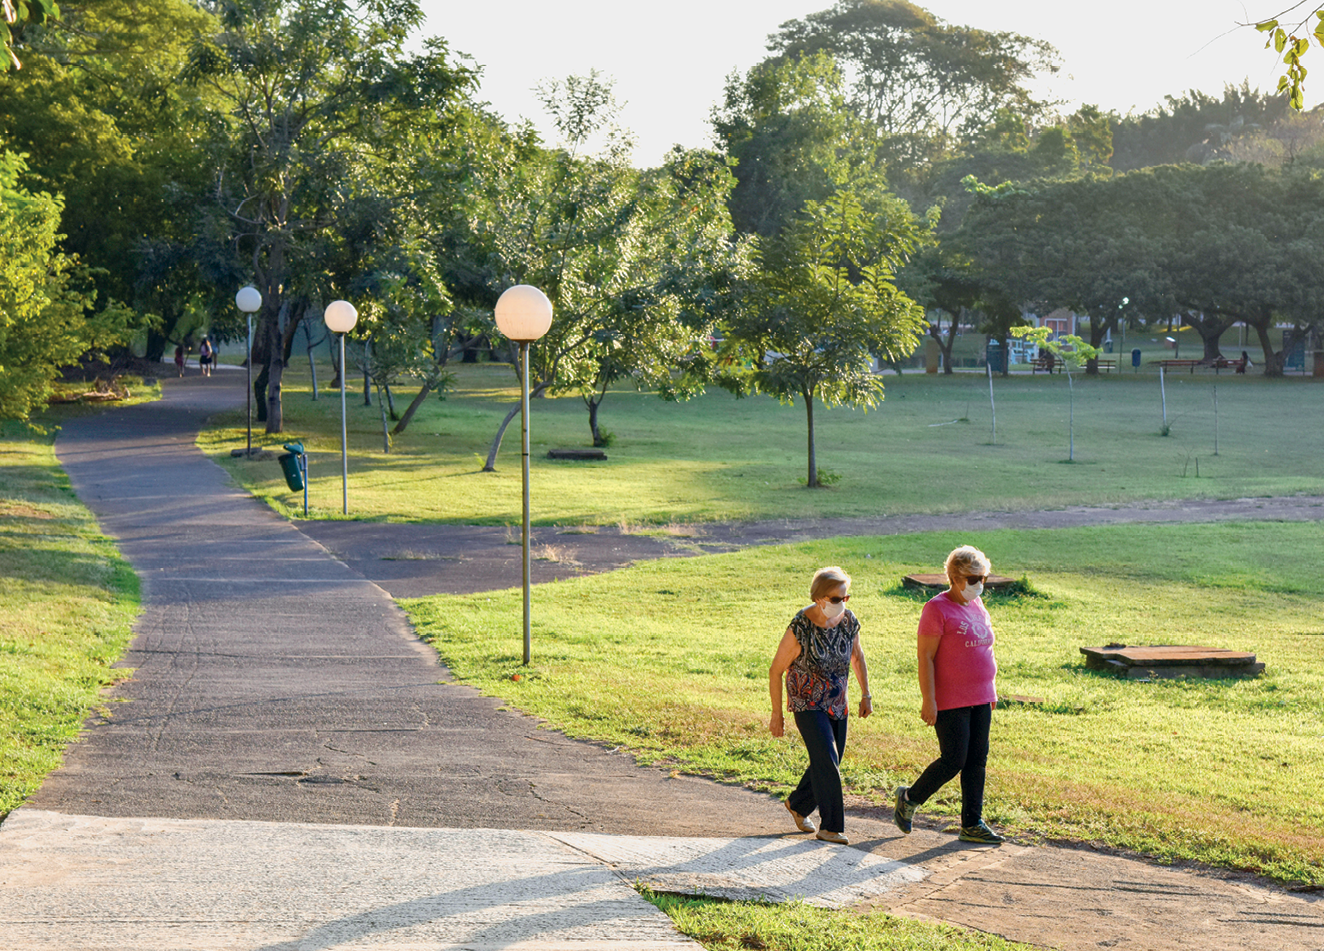 Fotografia. Vista de parte de um parque com uma área de gramado com várias árvores e alguns trechos asfaltados para a passagem de pessoas e com algumas iluminárias.  À frente, duas idosas caminhando.